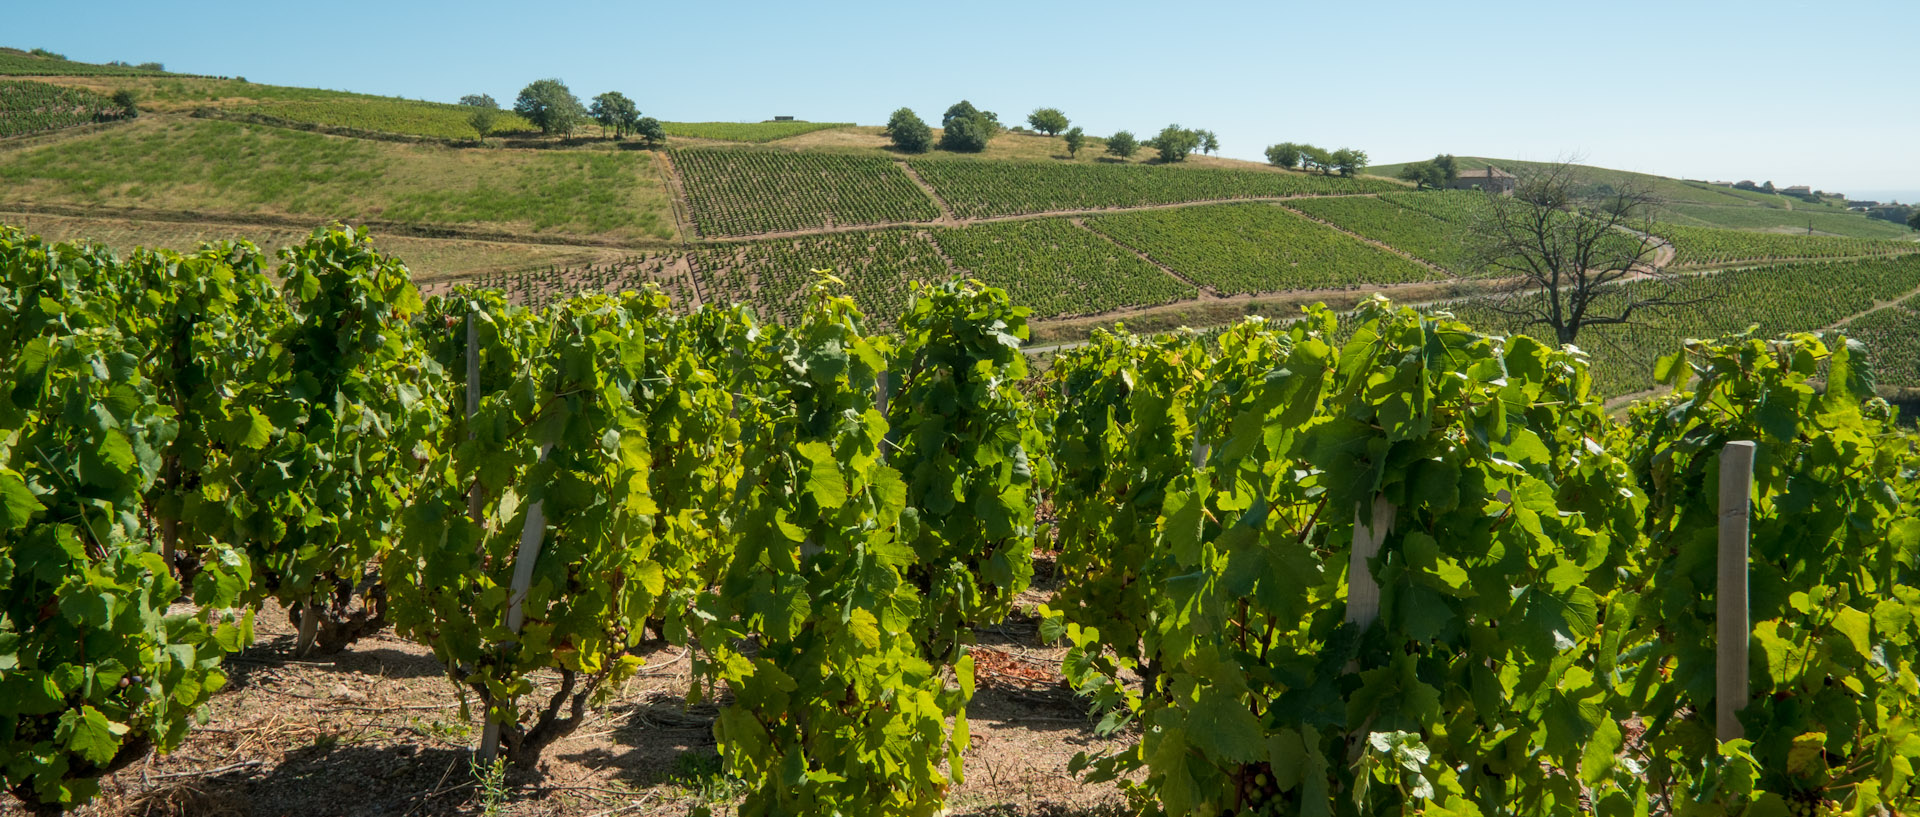 Visite vignoble beaujolais